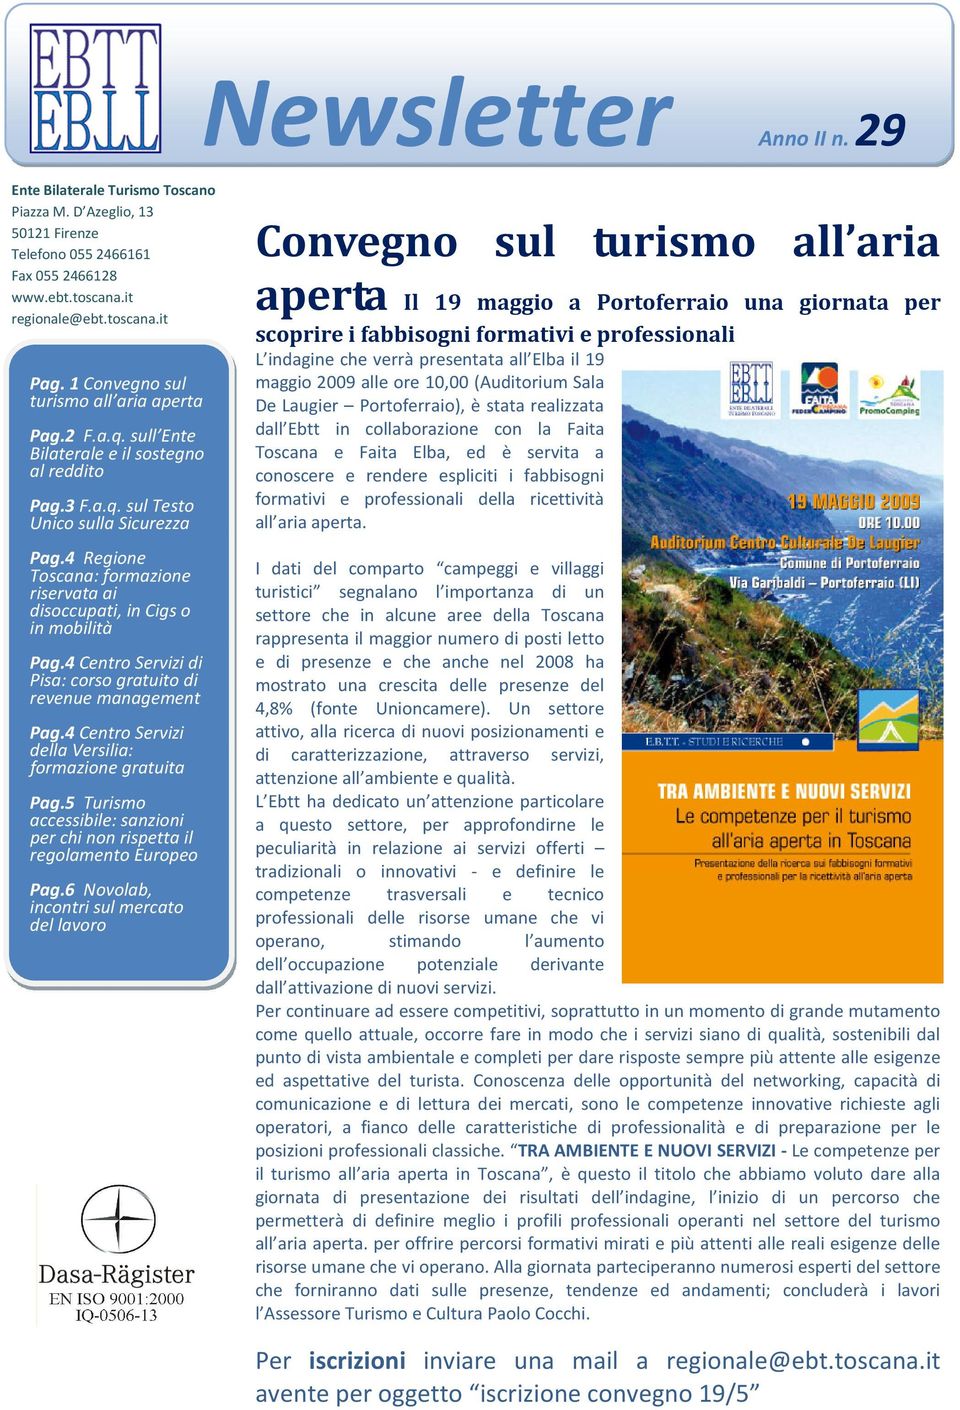 4 Regione Toscana: formazione riservata ai disoccupati, in Cigs o in mobilità Pag.4 Centro Servizi di Pisa: corso gratuito di revenue management Pag.